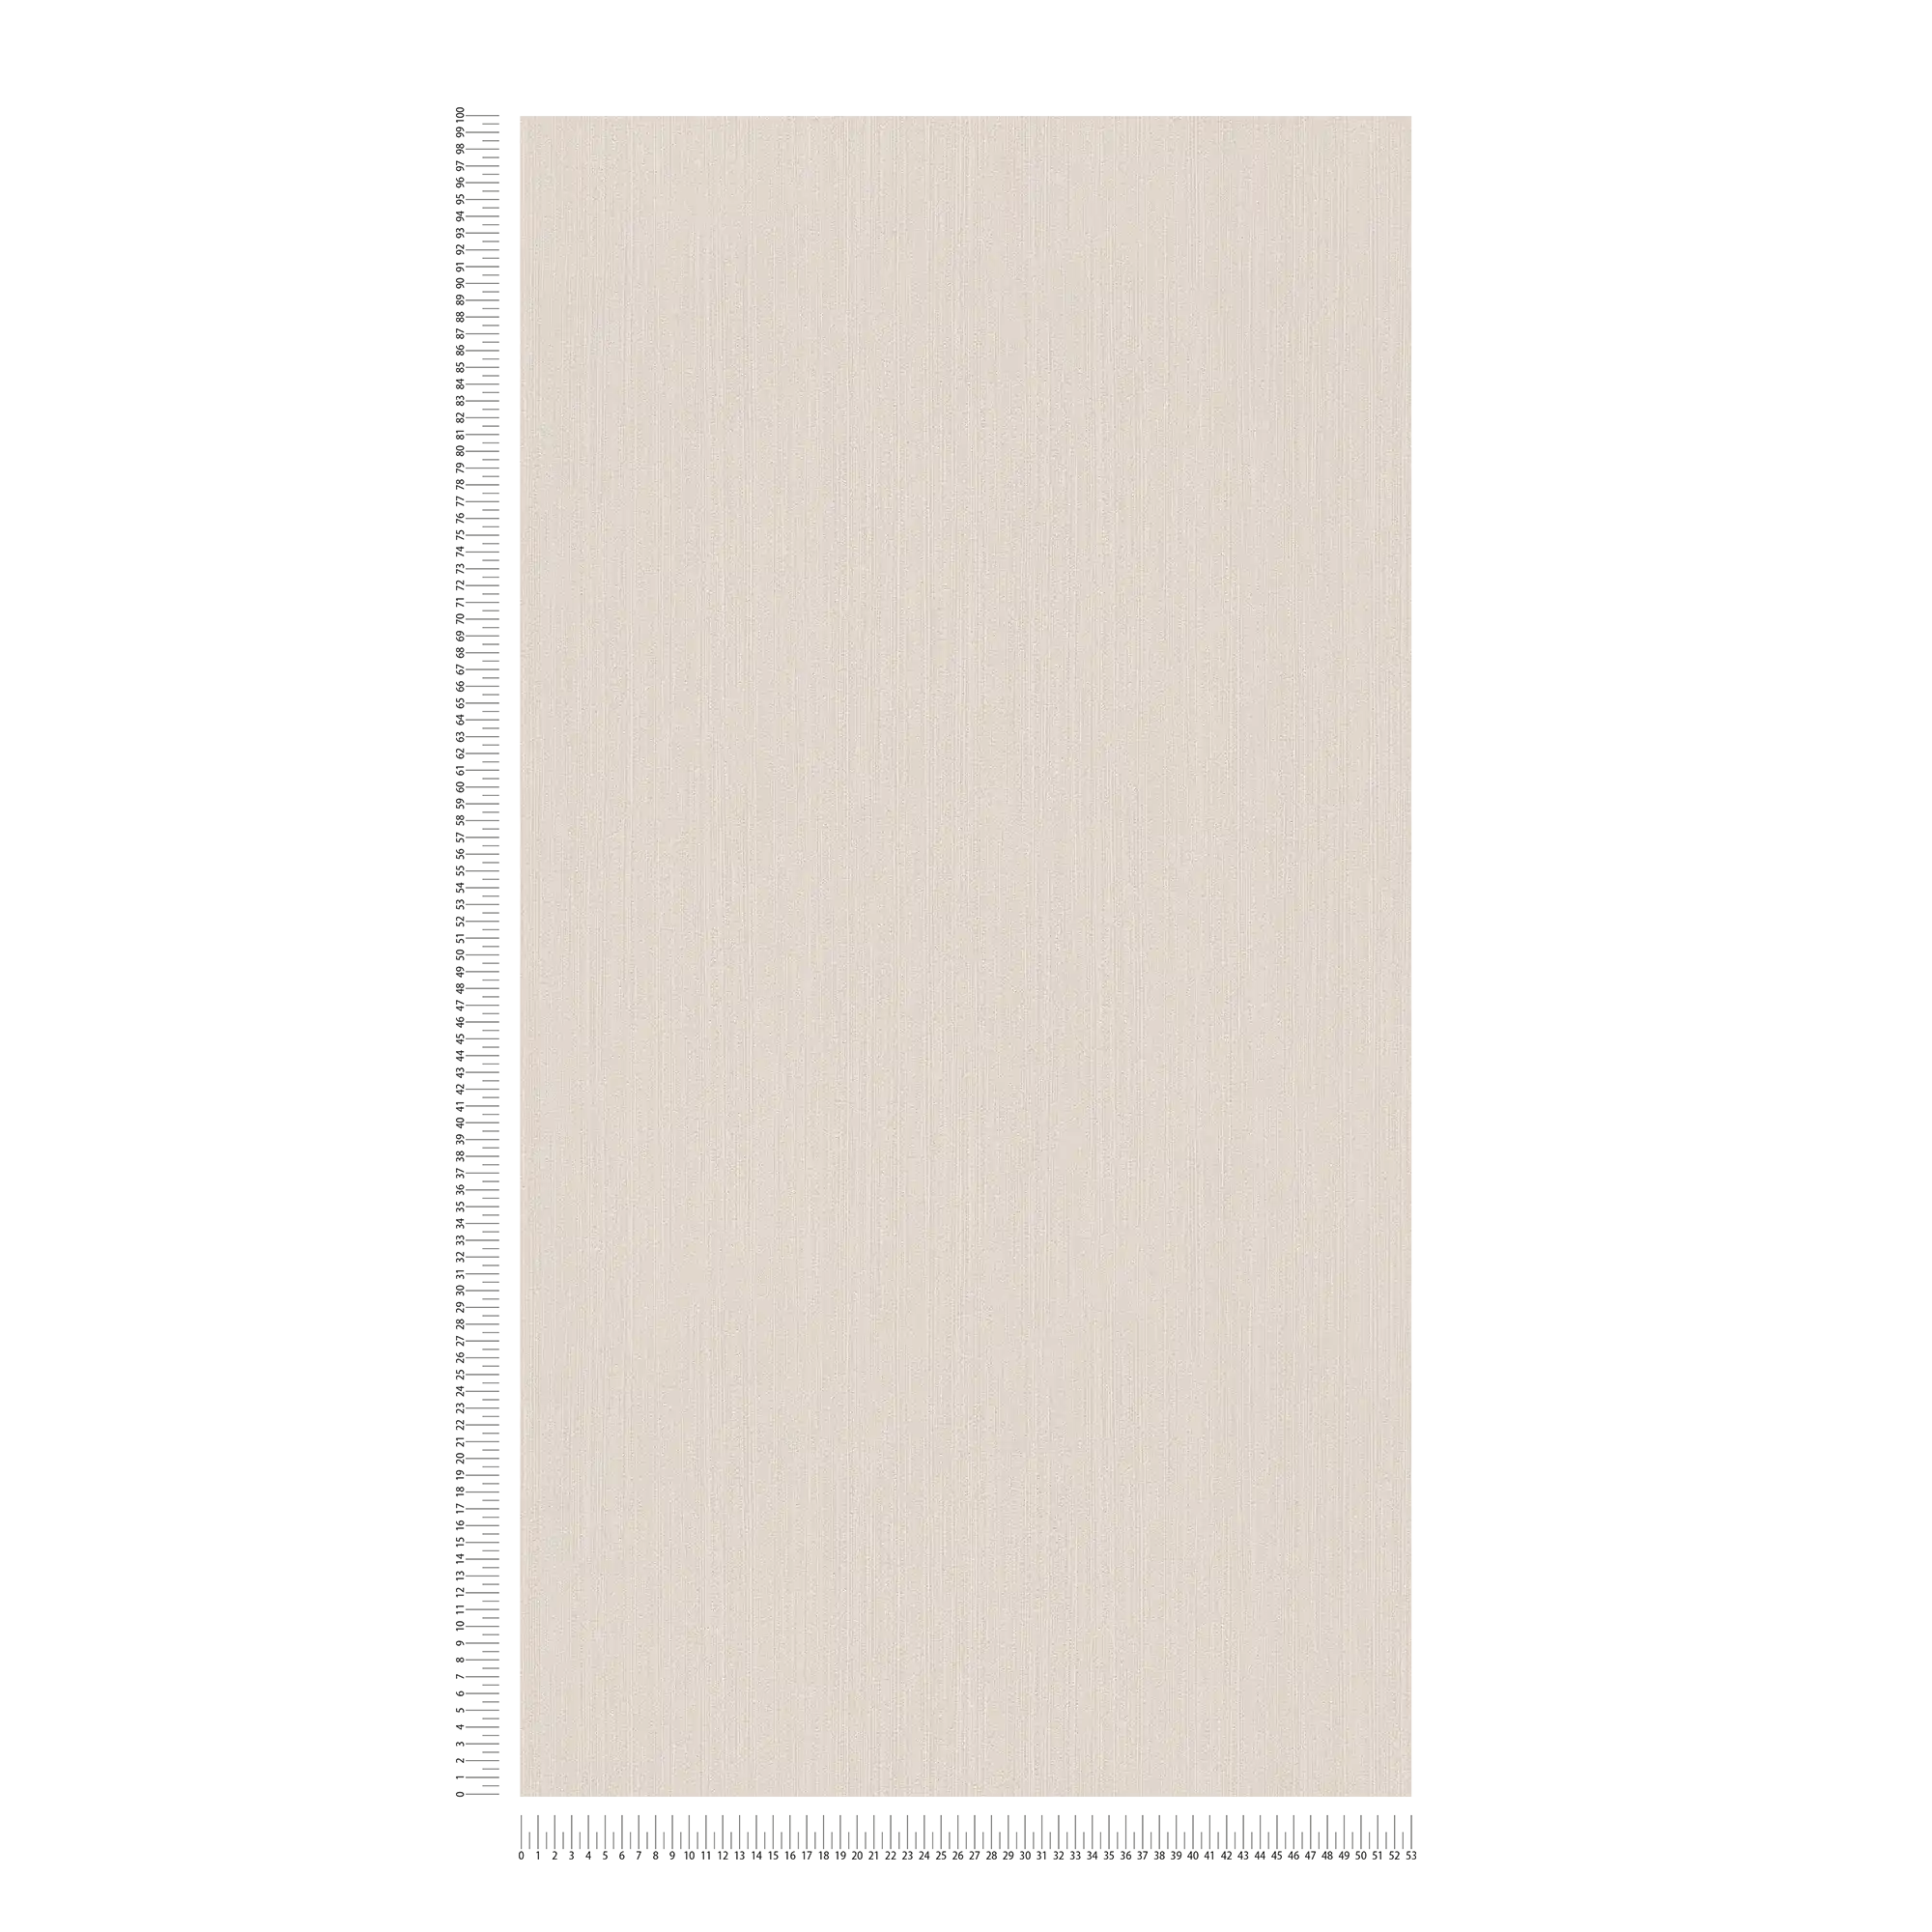             Papel pintado no tejido de color beige crema con un sutil sombreado - beige
        